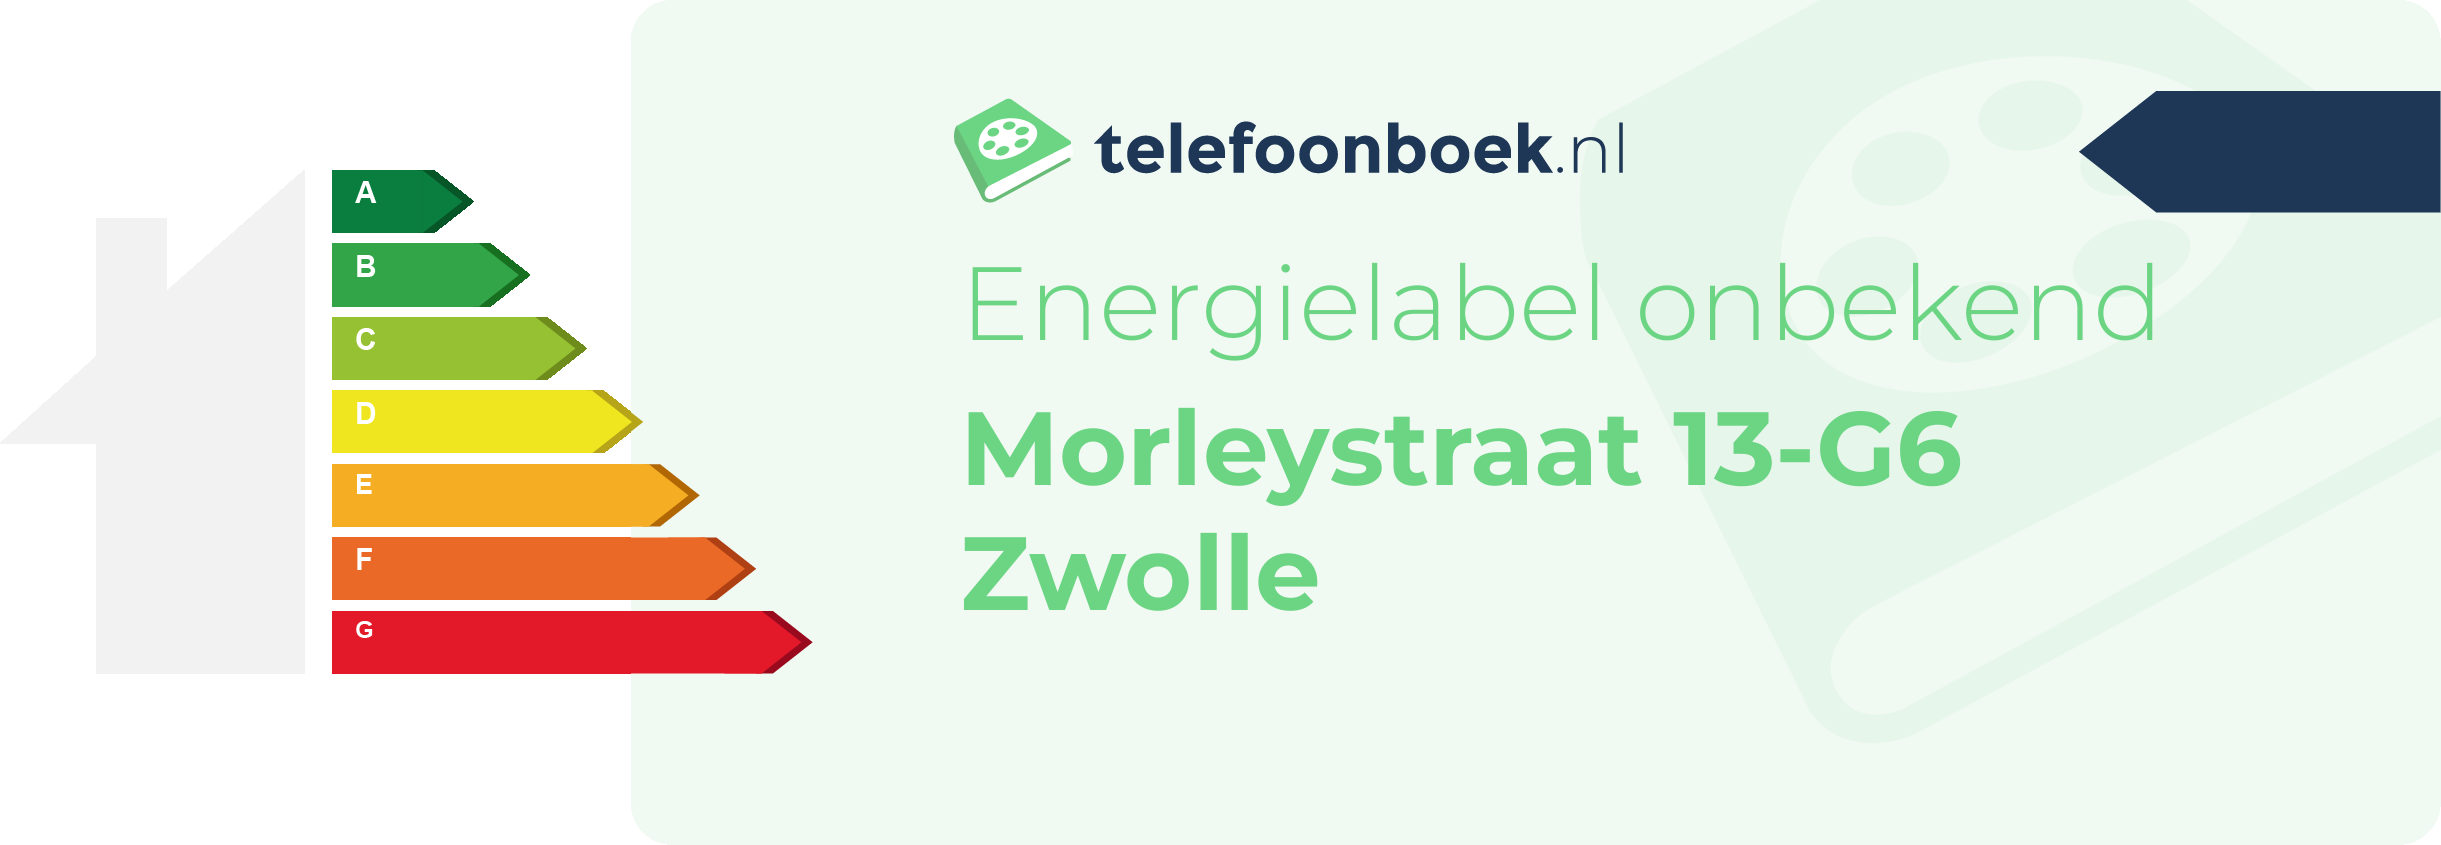 Energielabel Morleystraat 13-G6 Zwolle